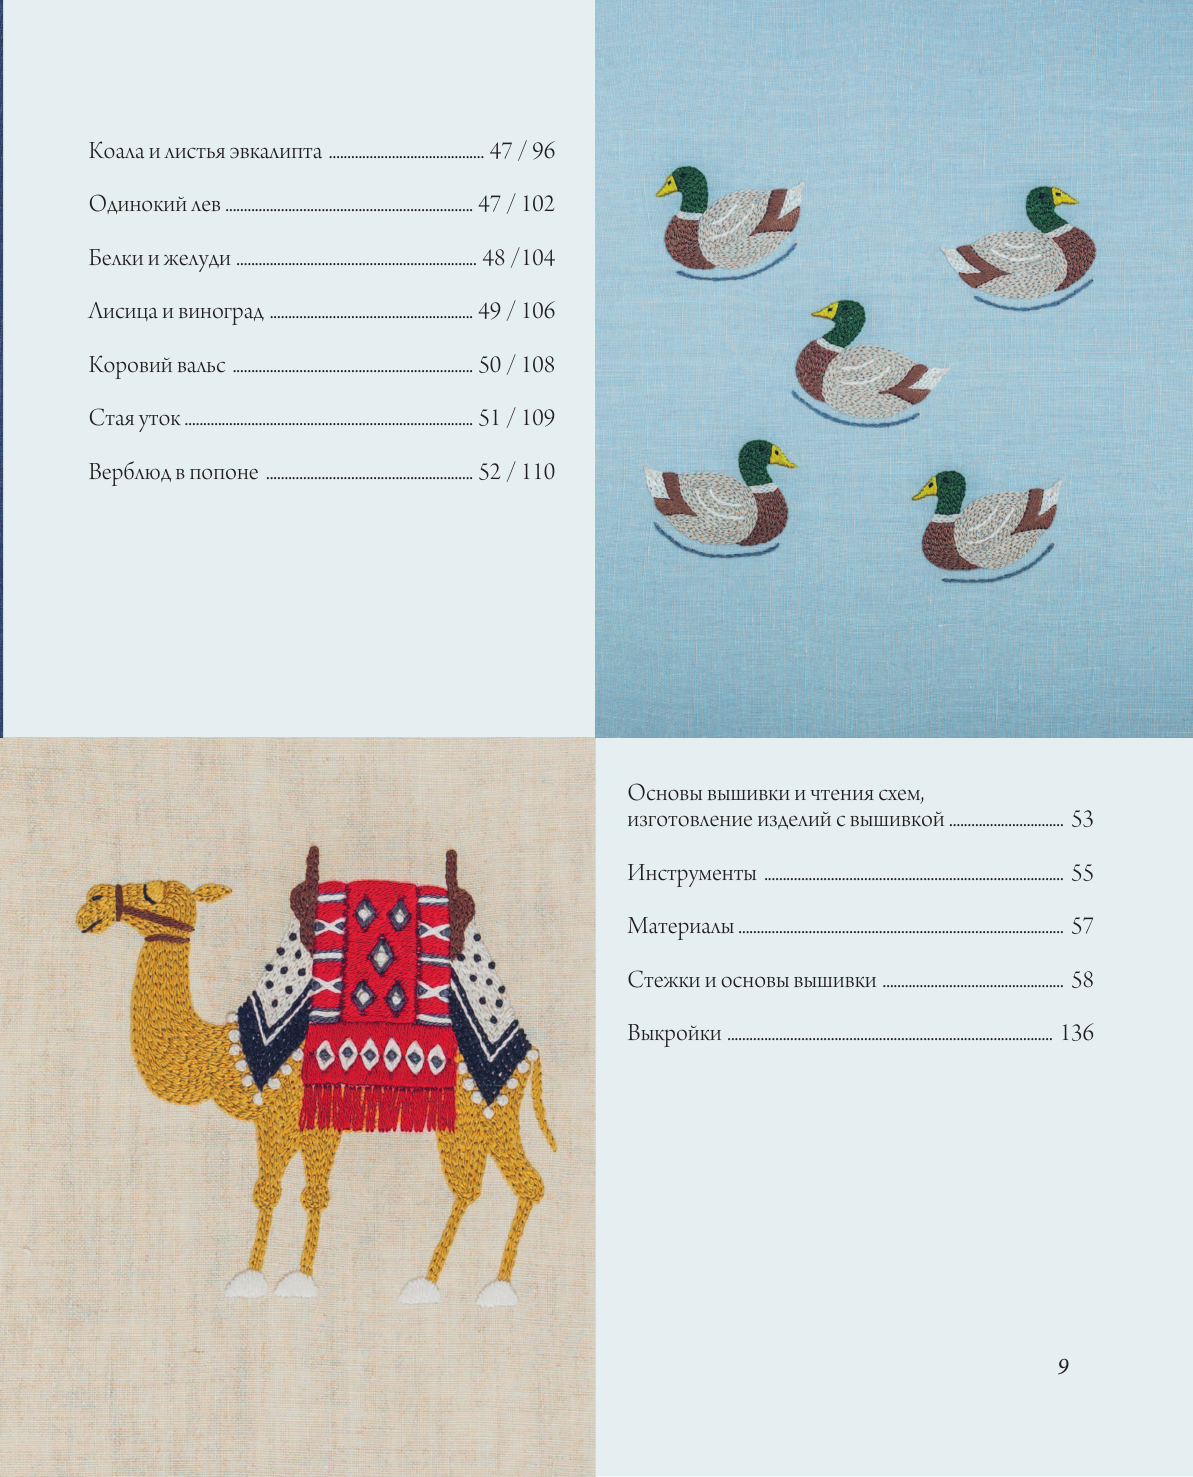 Вышивка Юмико Хигучи Анималистическая коллекция Простые и эффектные дизайны вышивки нитью мулине по льняной ткани 25 сюжетов с животными - фото №8